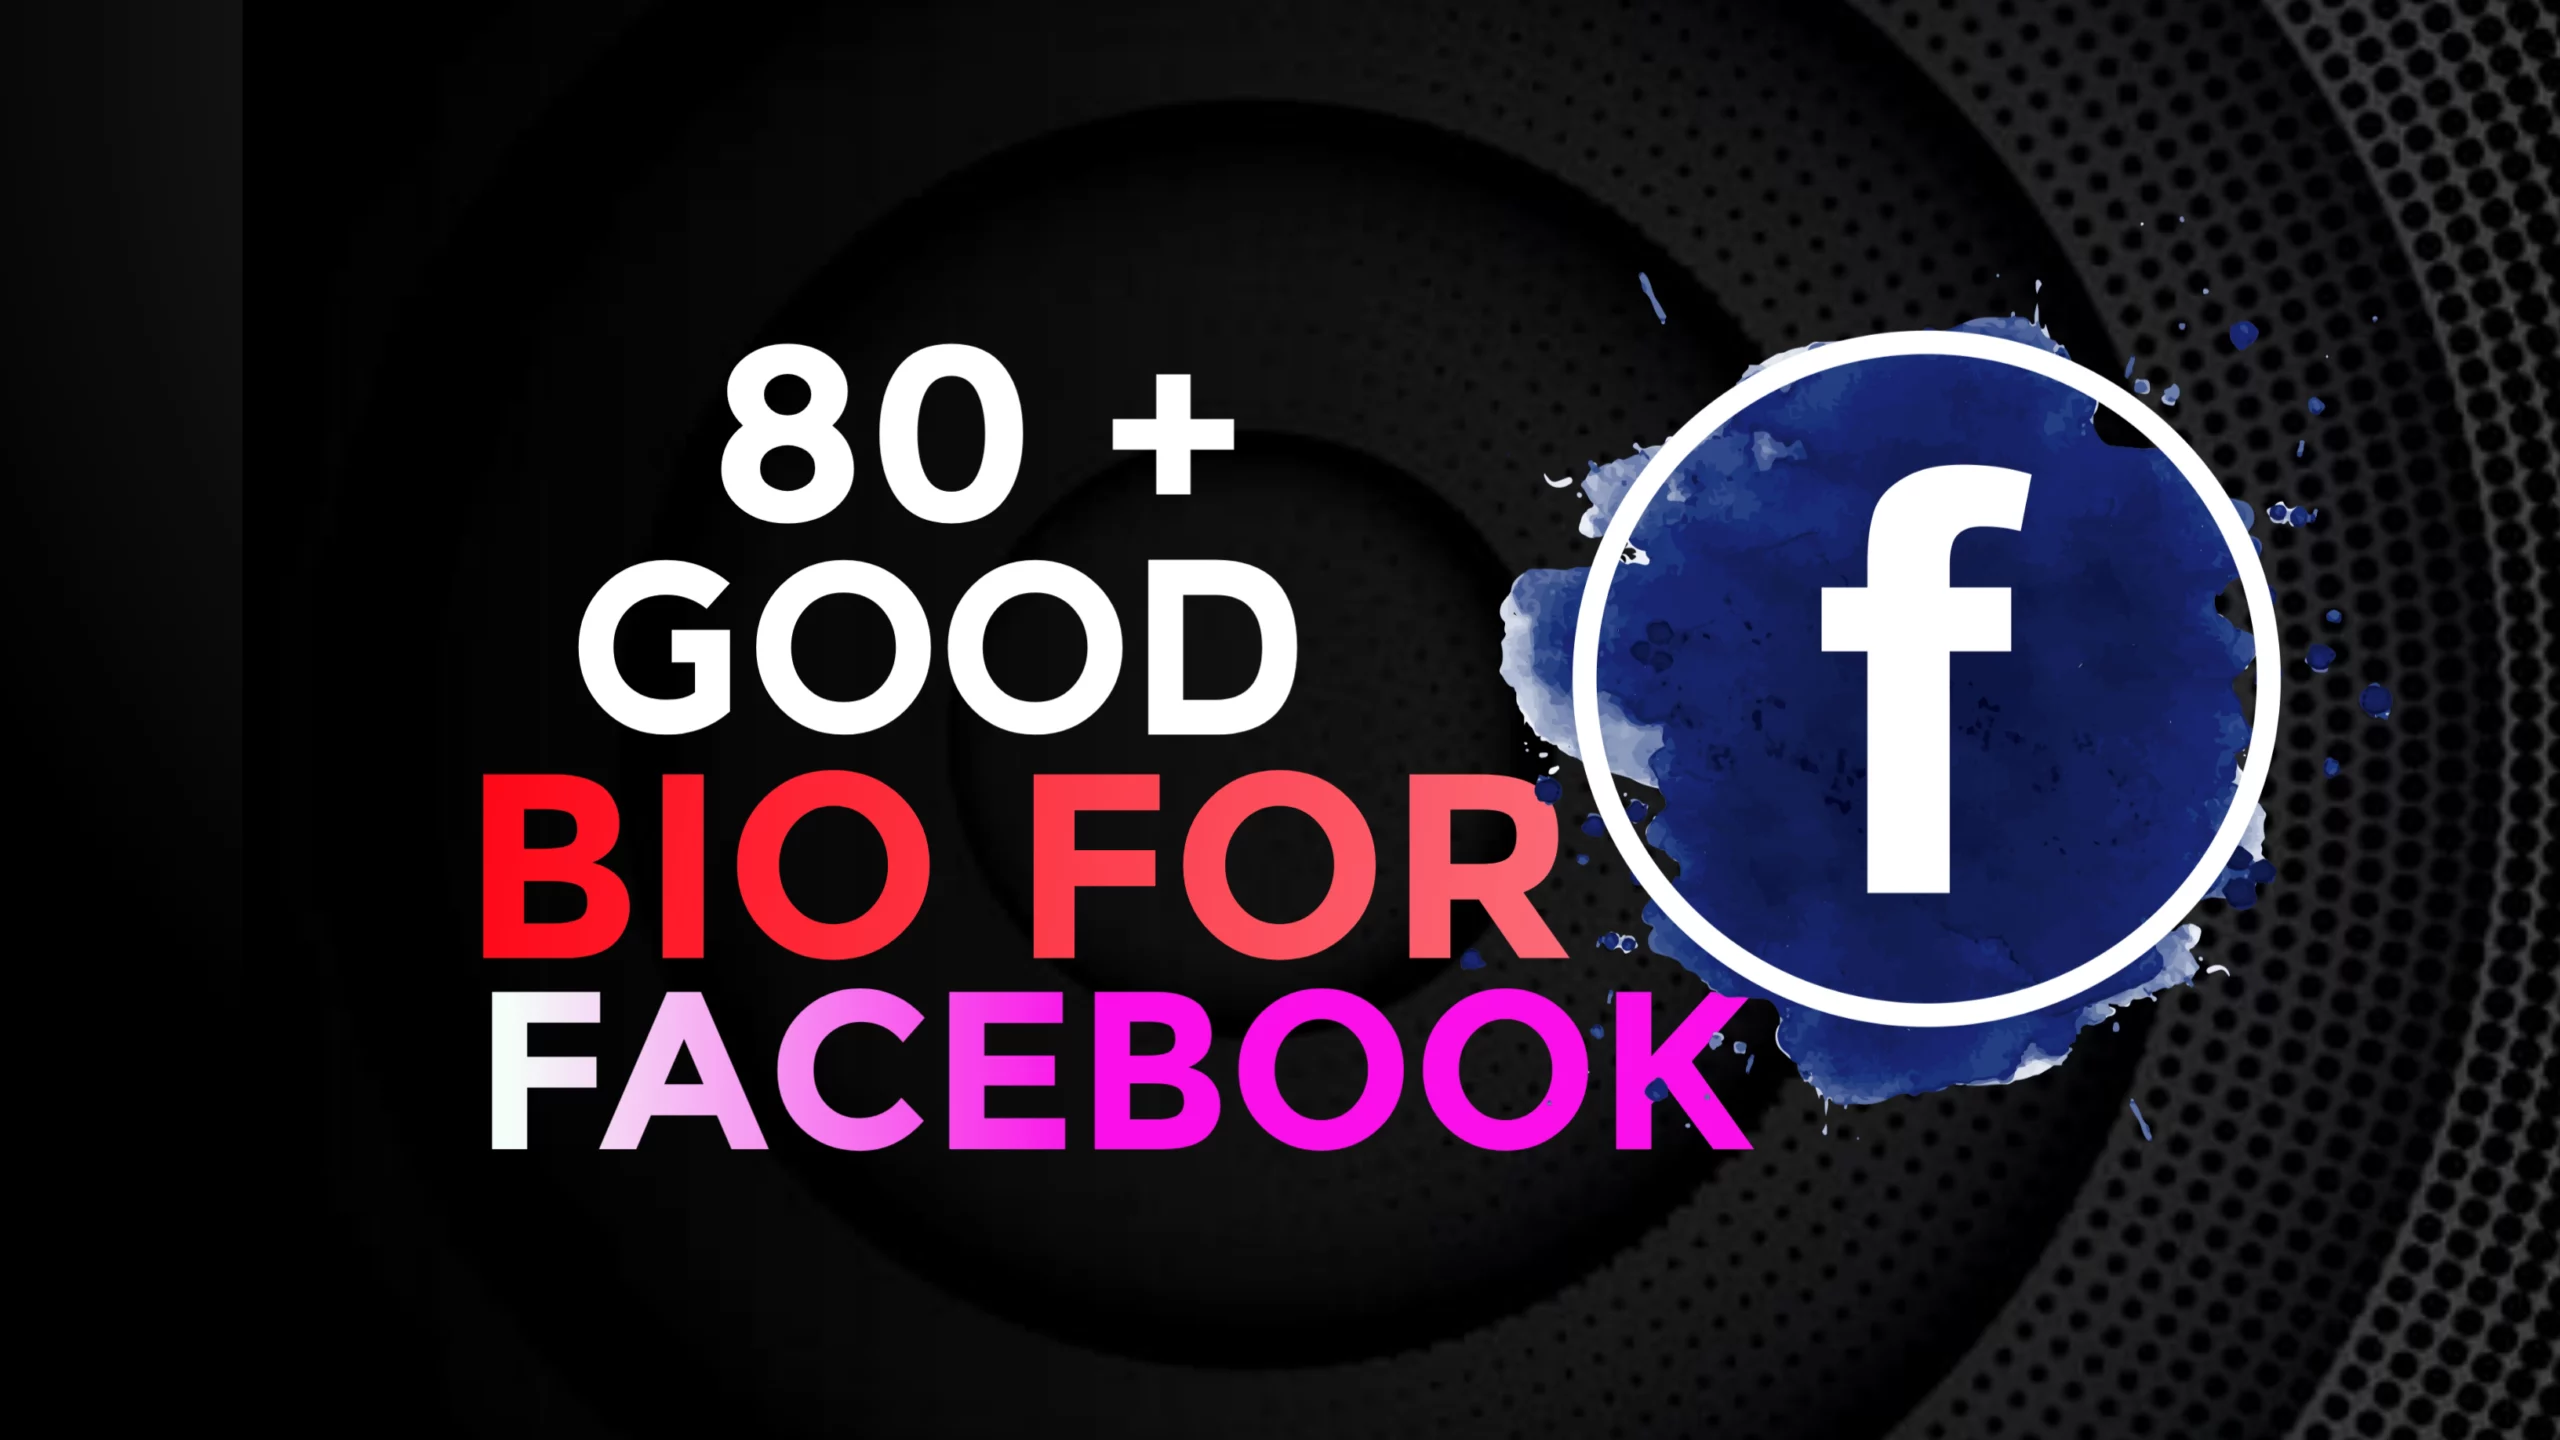 80+ Good Bio For Facebook: Facebook Profile Bio Ideas For Good